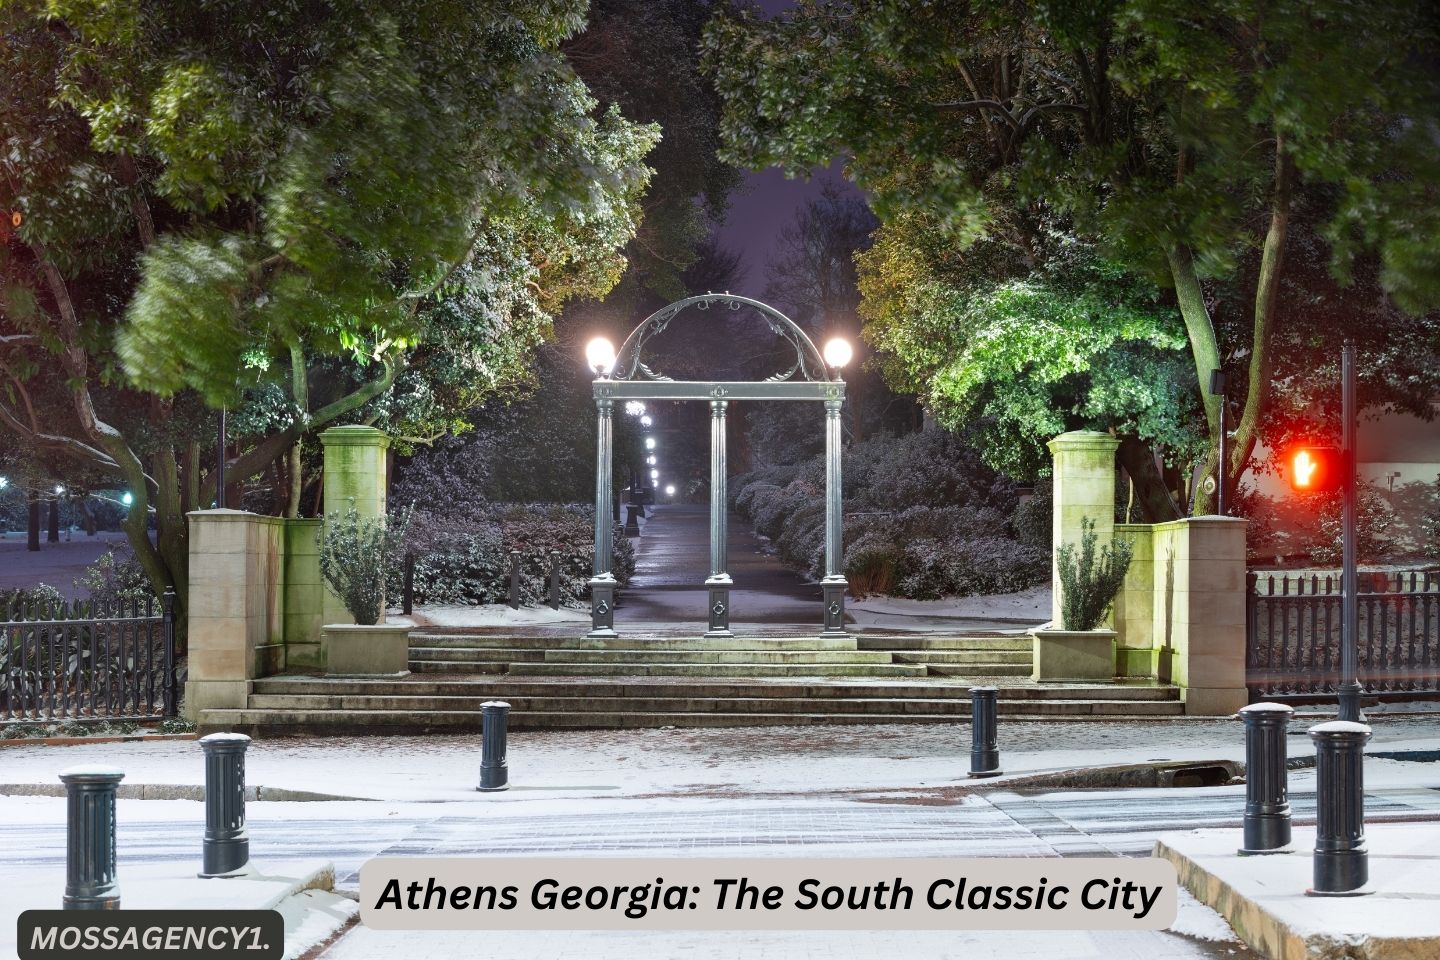 Athens Georgia: The South Classic City